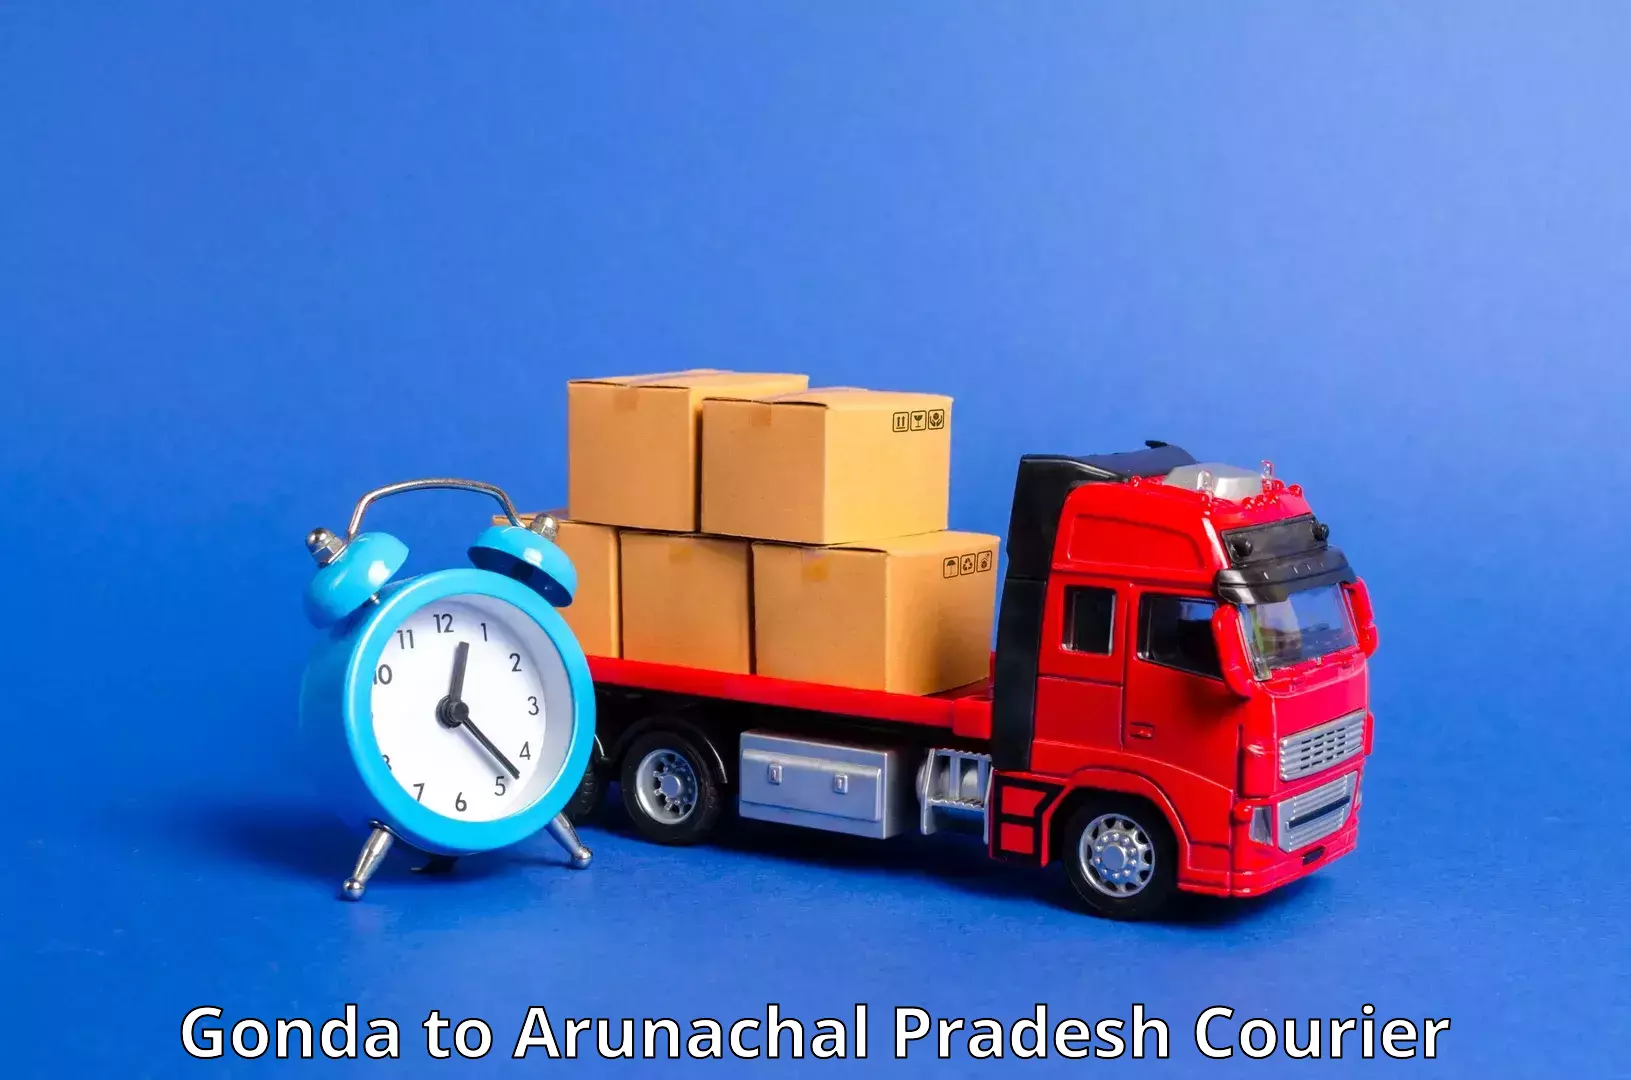 Personal parcel delivery Gonda to Arunachal Pradesh